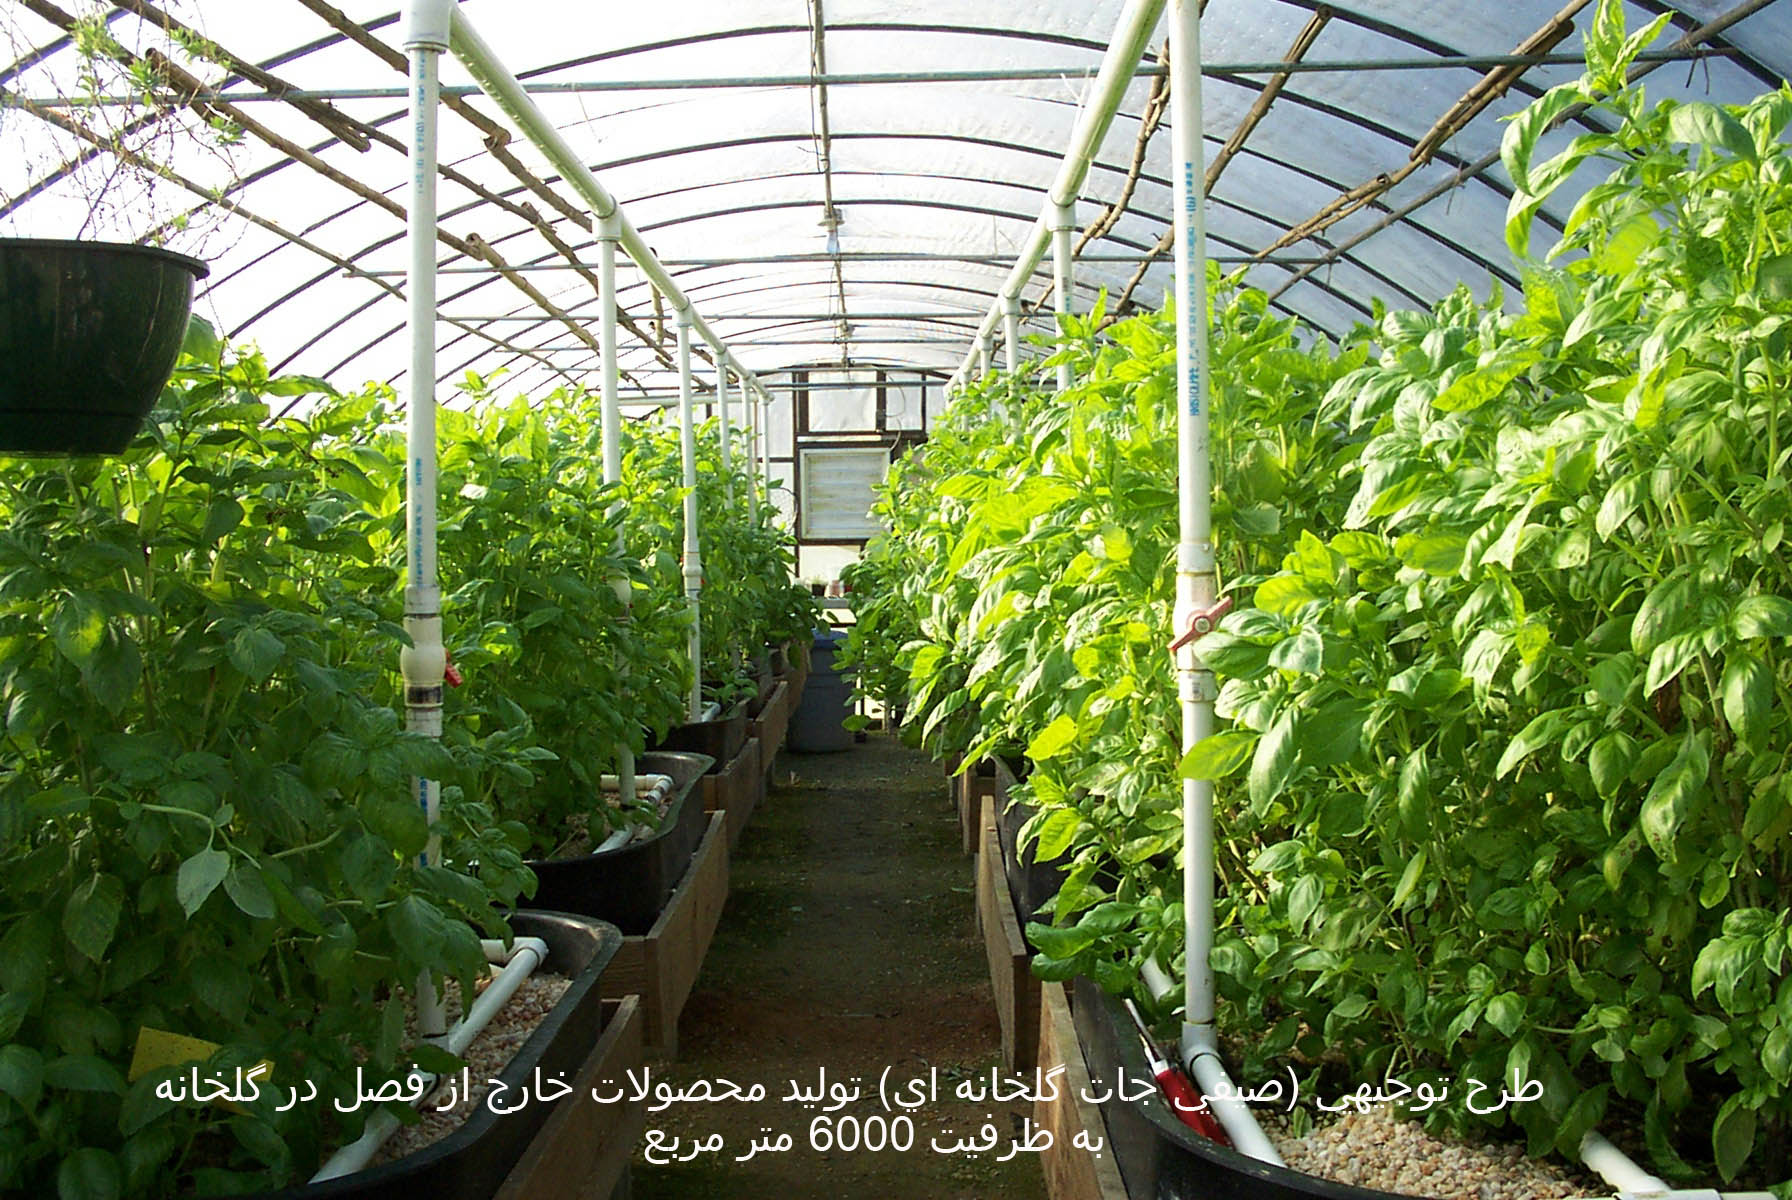 طرح توجيهي توليد محصولات خارج از فصل در گلخانه به ظرفيت 6000 متر مربع